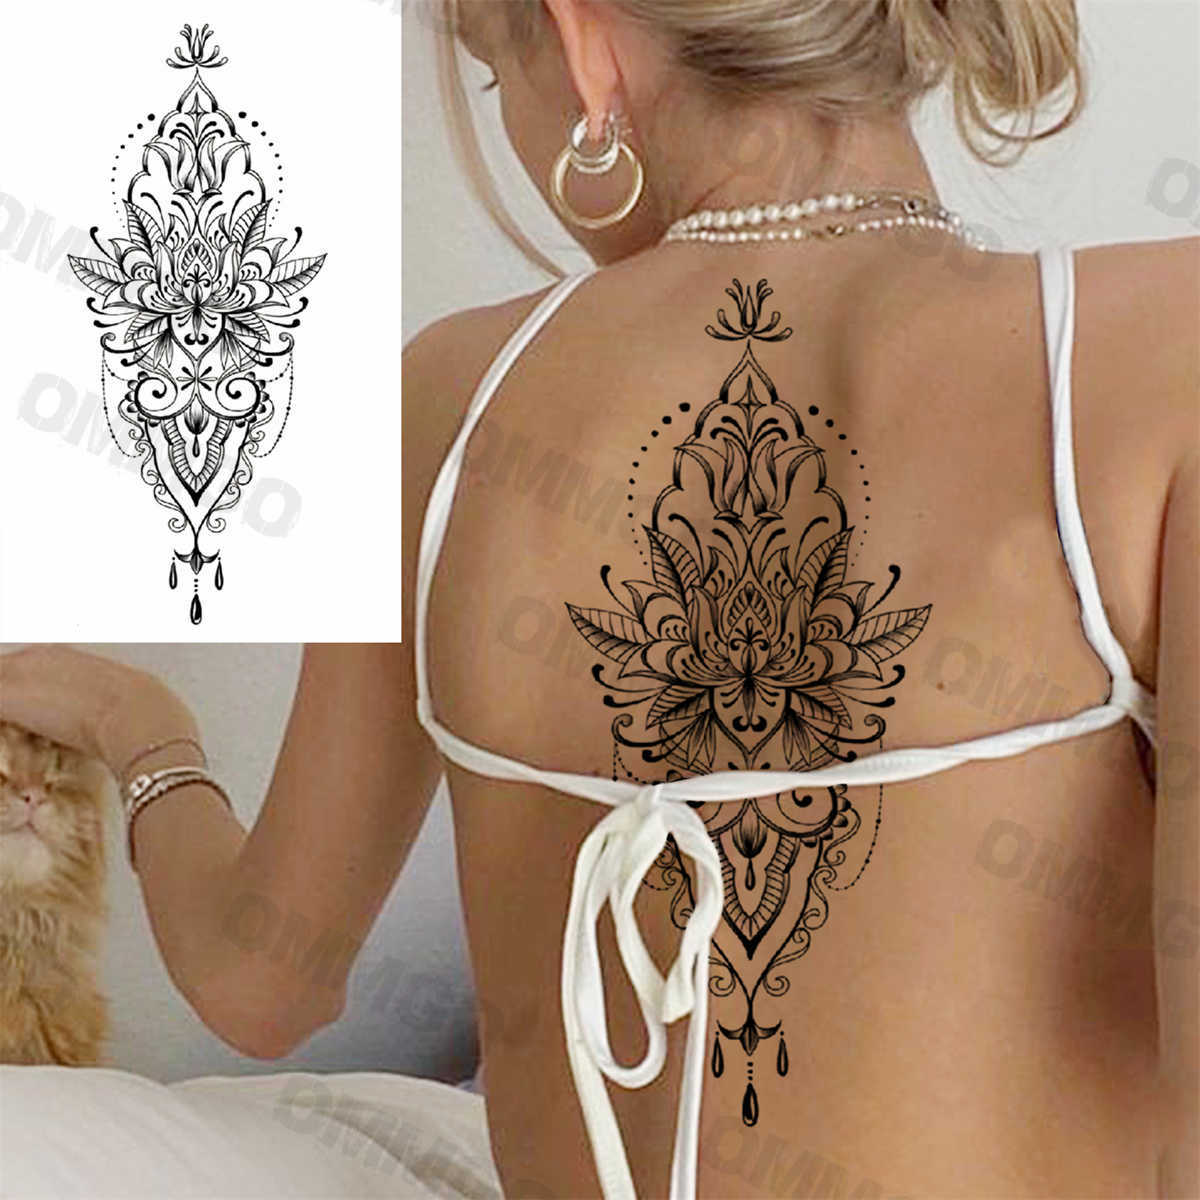 Temporäre Tattoos Realistischer Schmetterling Anhänger Sexy Rücken Temporäre Tattoos Für Frauen Erwachsene Mond Lotus Fake Tattoo Body Art Malerei Tatoos Aufkleber Z0403